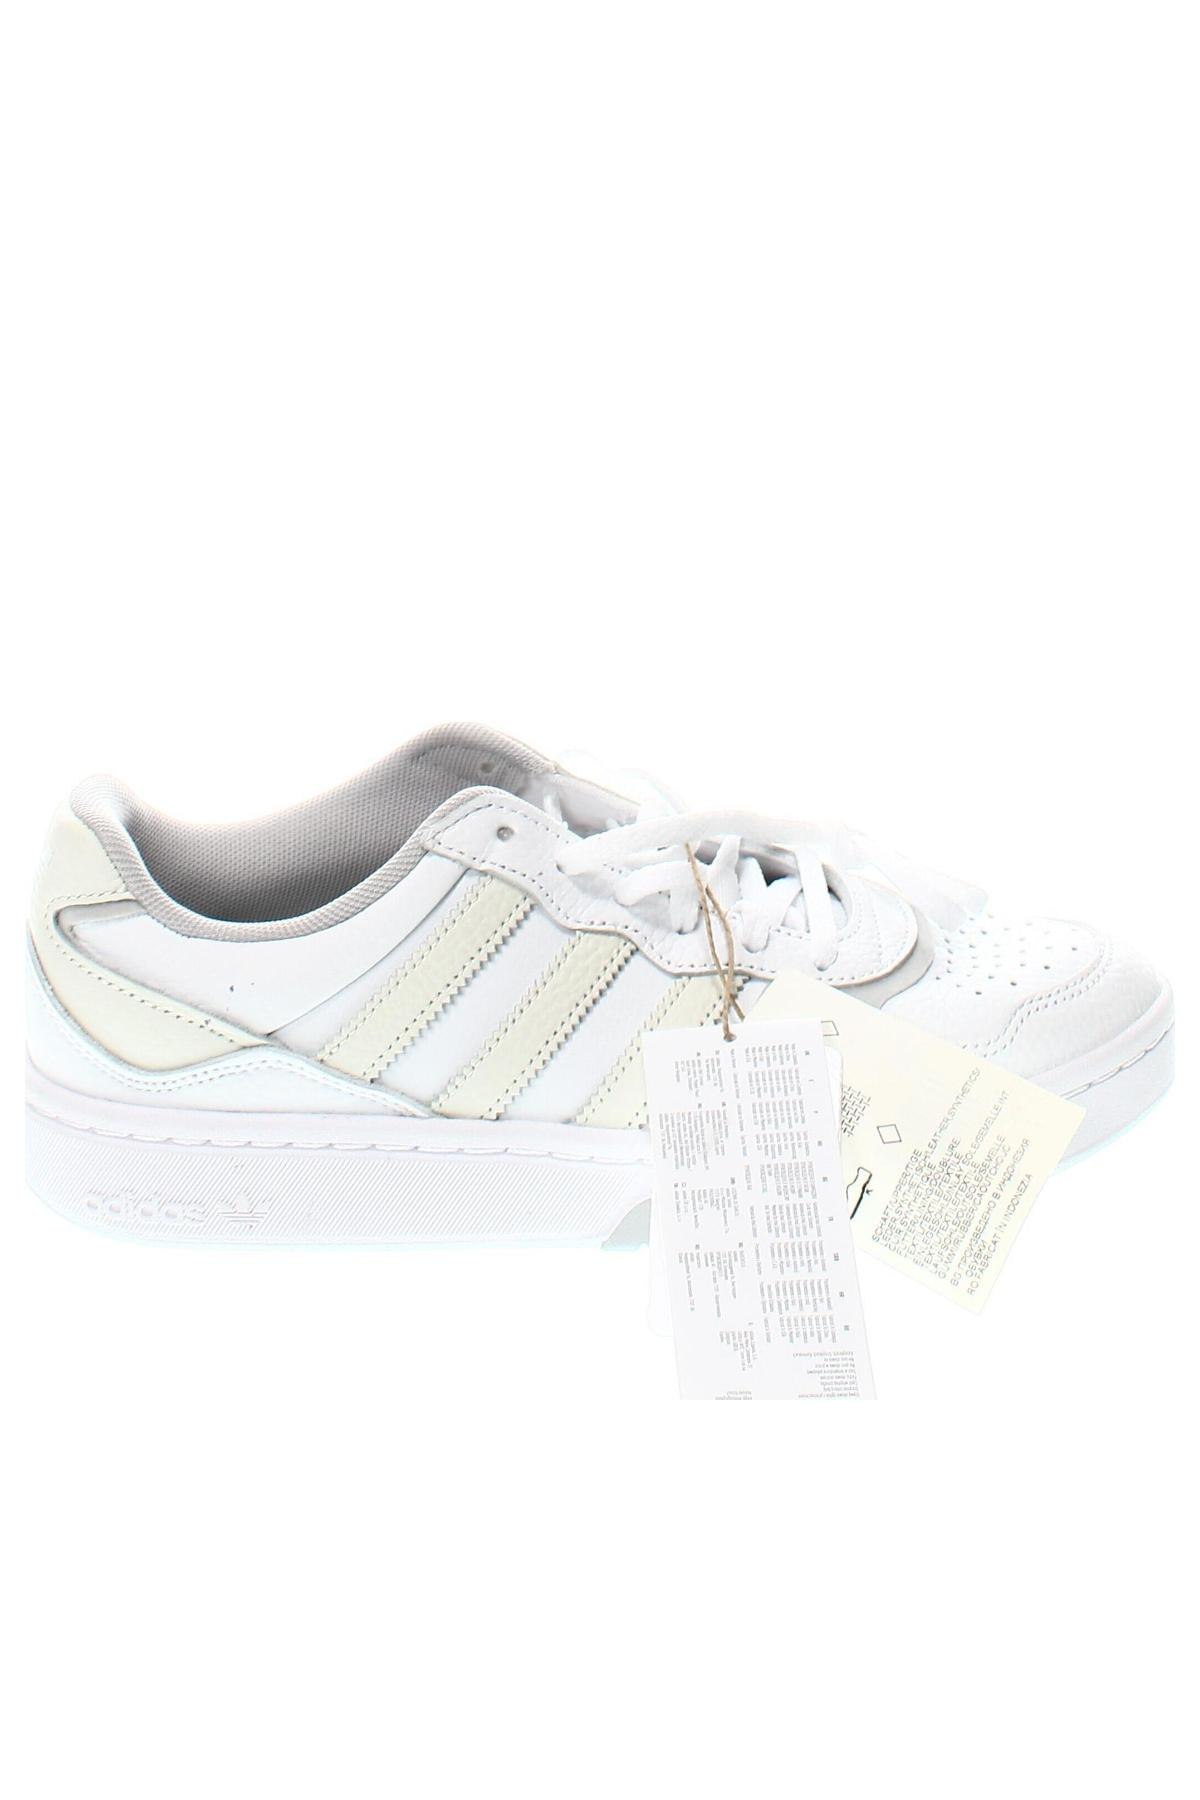 Παπούτσια Adidas Originals, Μέγεθος 40, Χρώμα Λευκό, Τιμή 97,94 €